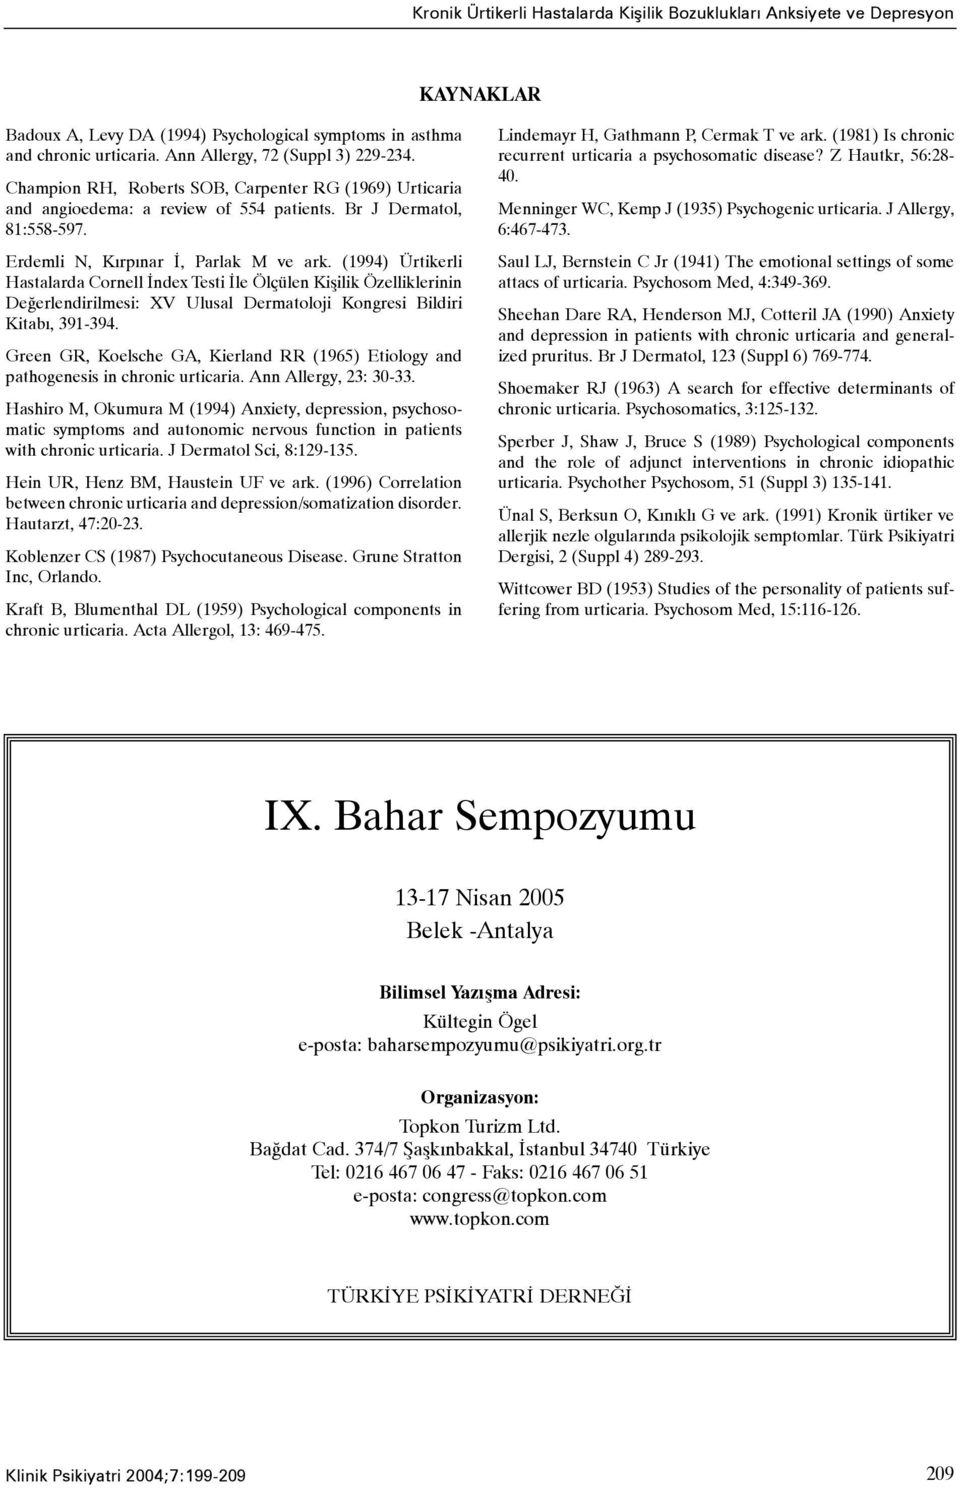 (1994) Ürtikerli Hastalarda Cornell Ýndex Testi Ýle Ölçülen Kiþilik Özelliklerinin Deðerlendirilmesi: XV Ulusal Dermatoloji Kongresi Bildiri Kitabý, 391-394.